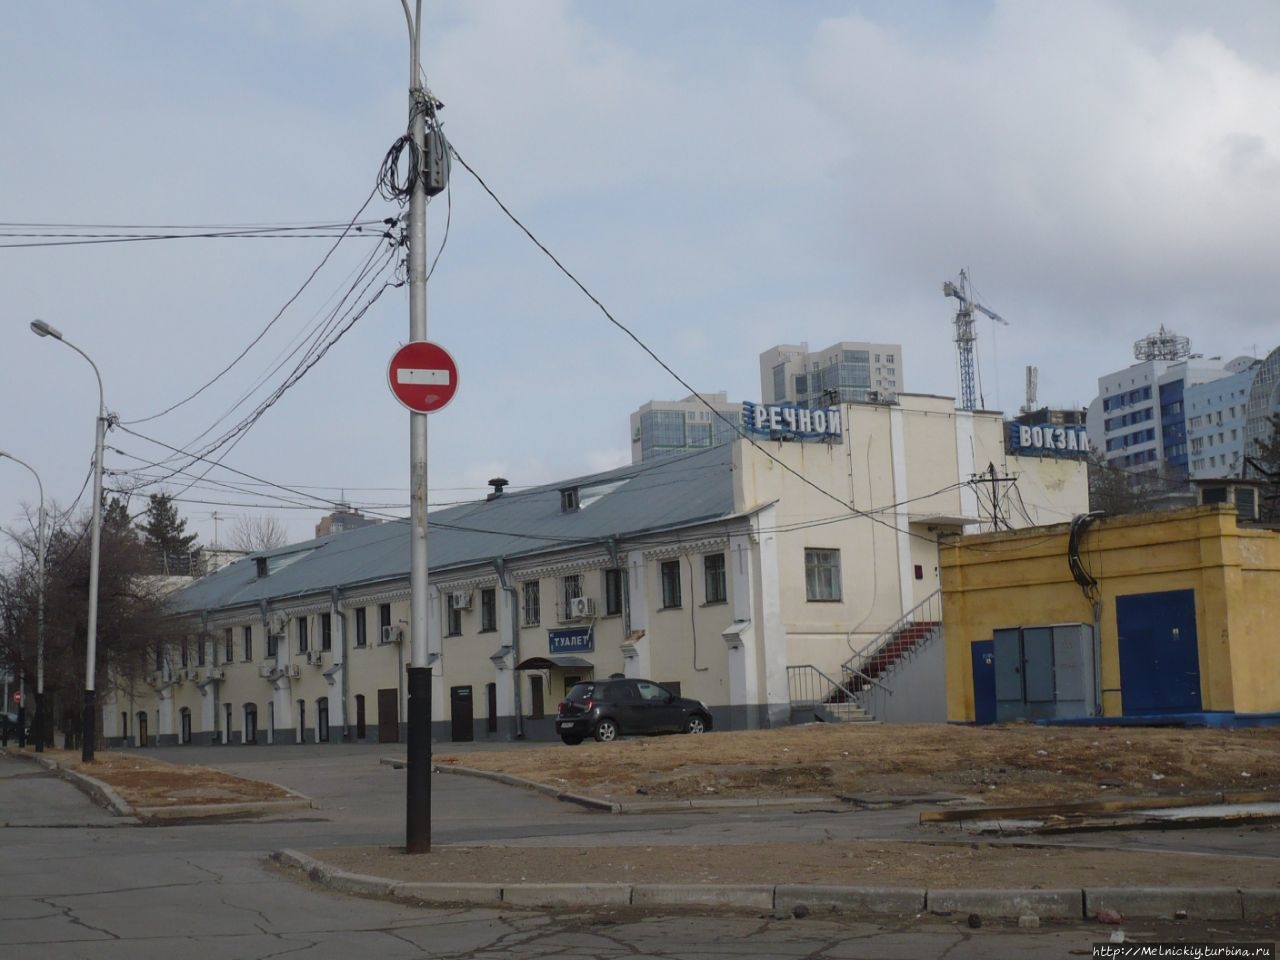 Хабаровск – город русских первопроходцев